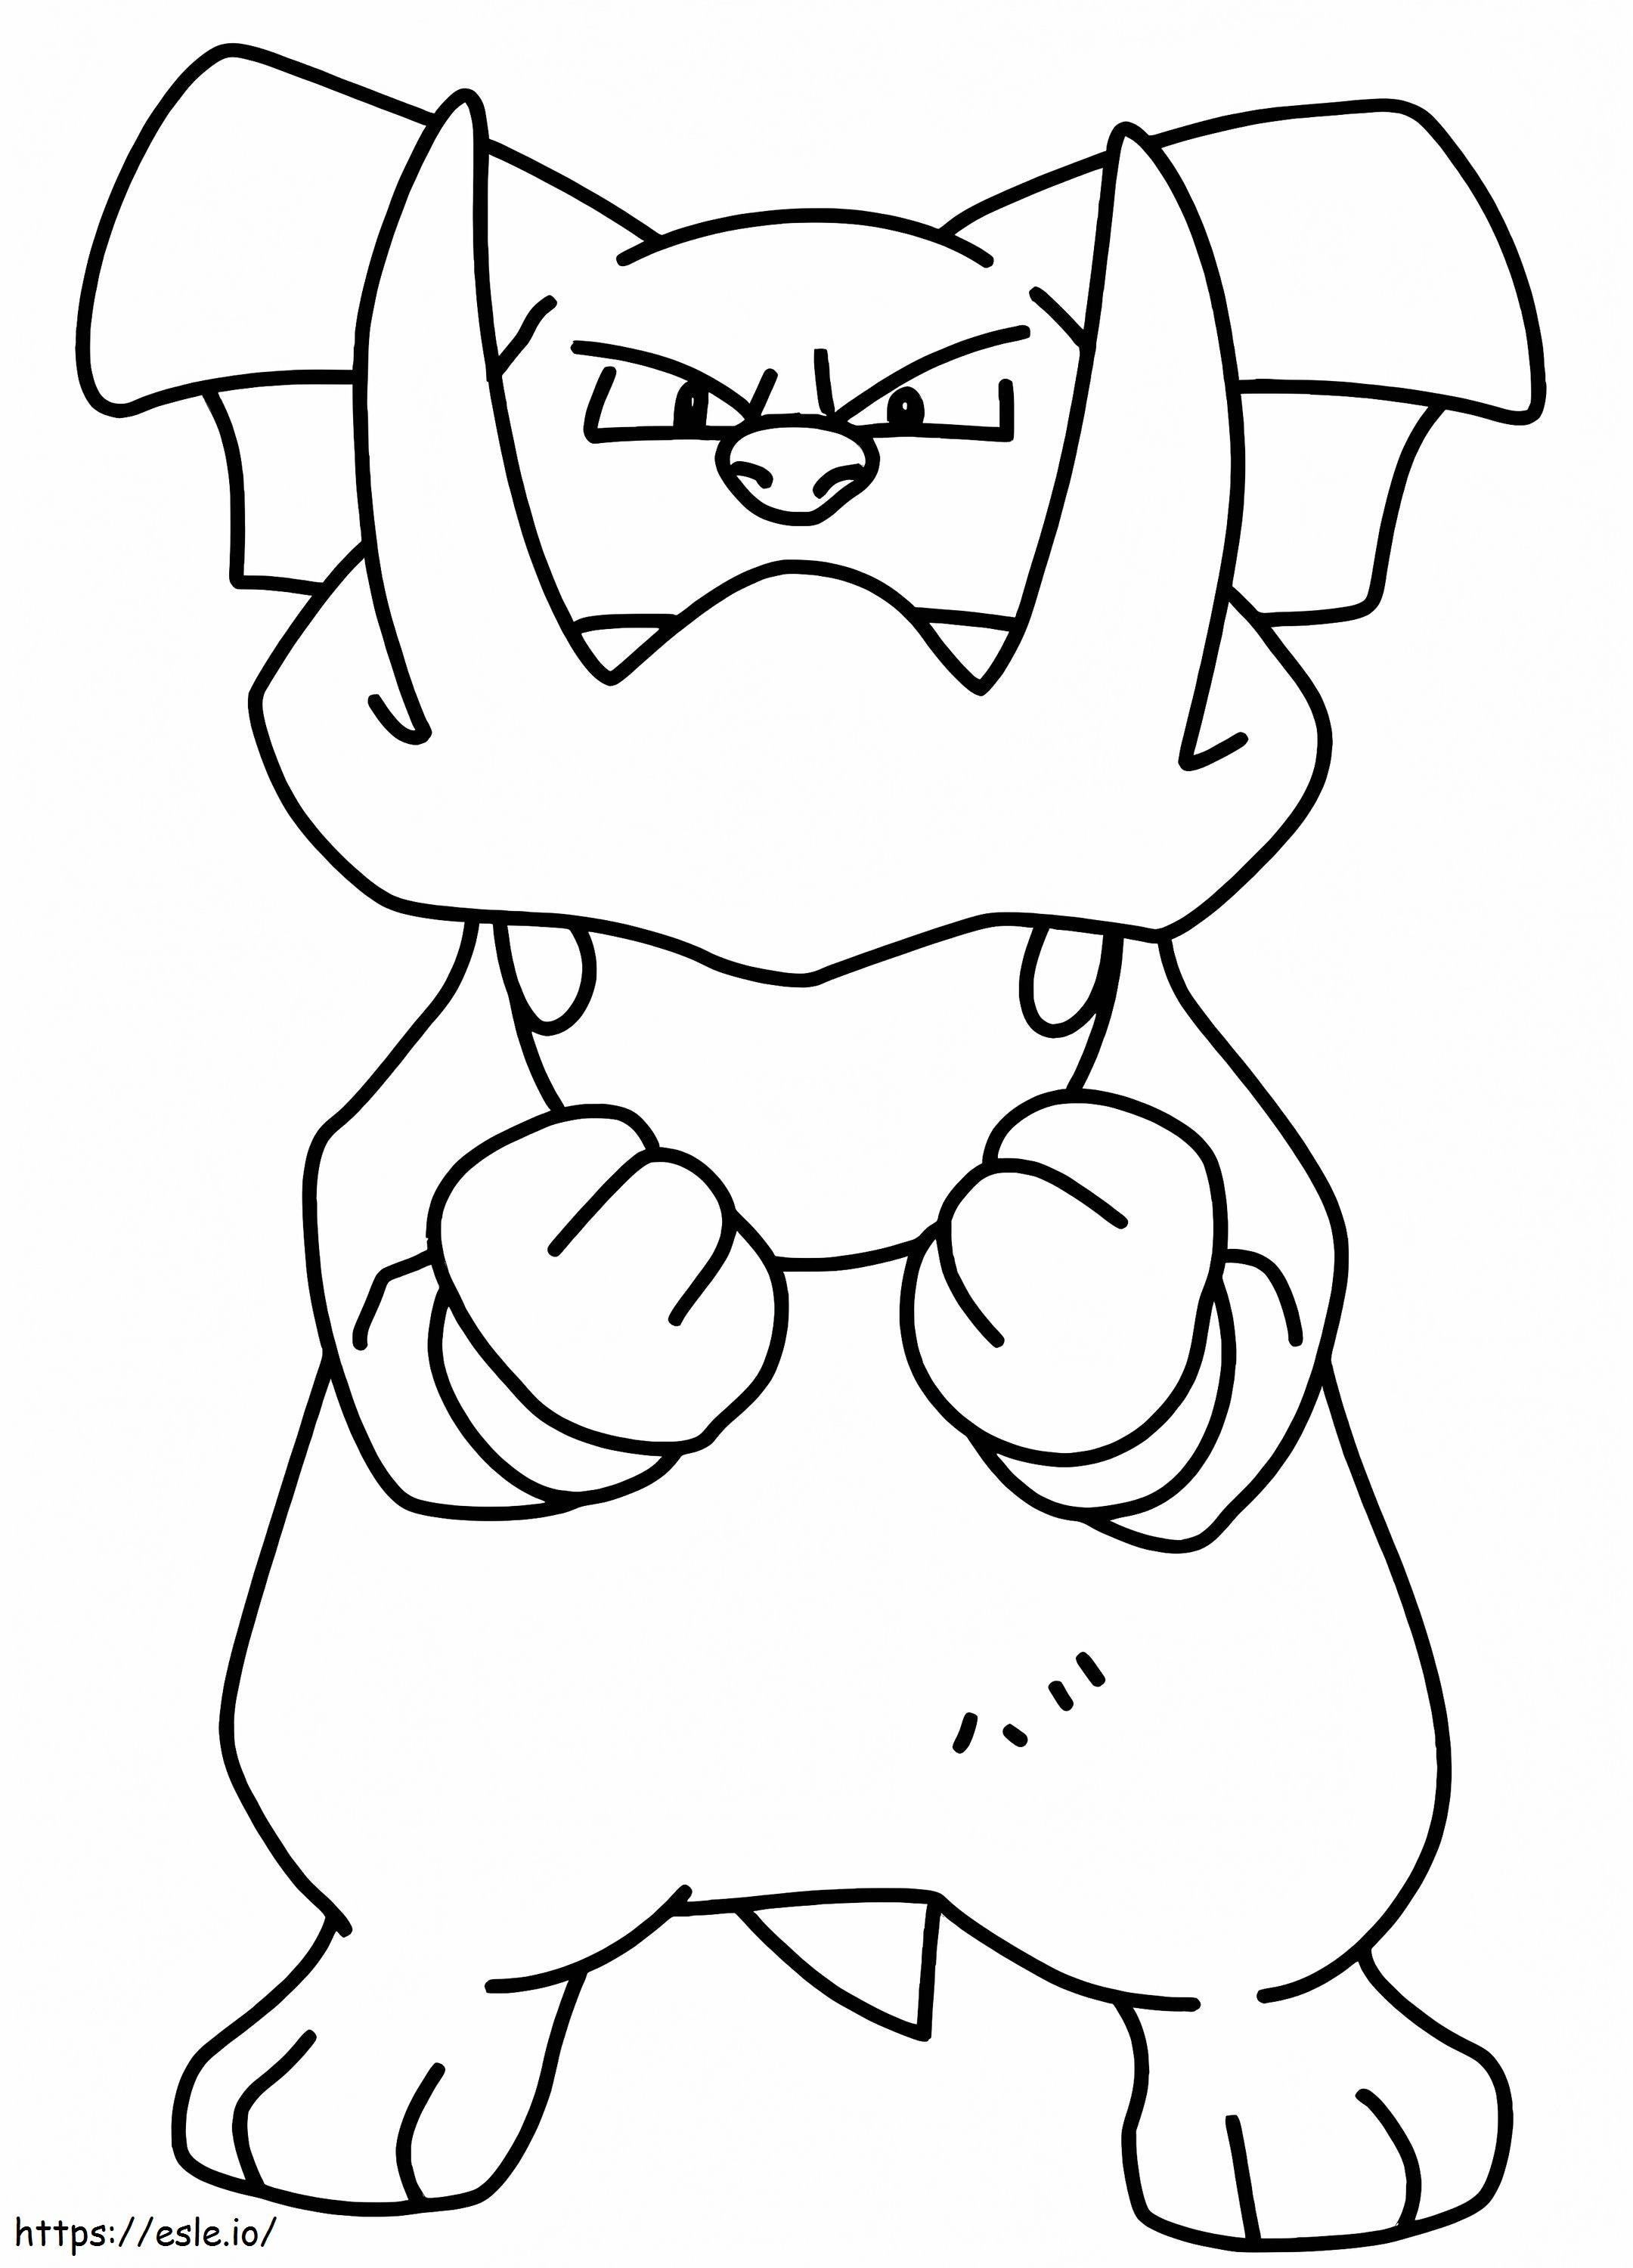 Granbull w Pokemonach kolorowanka